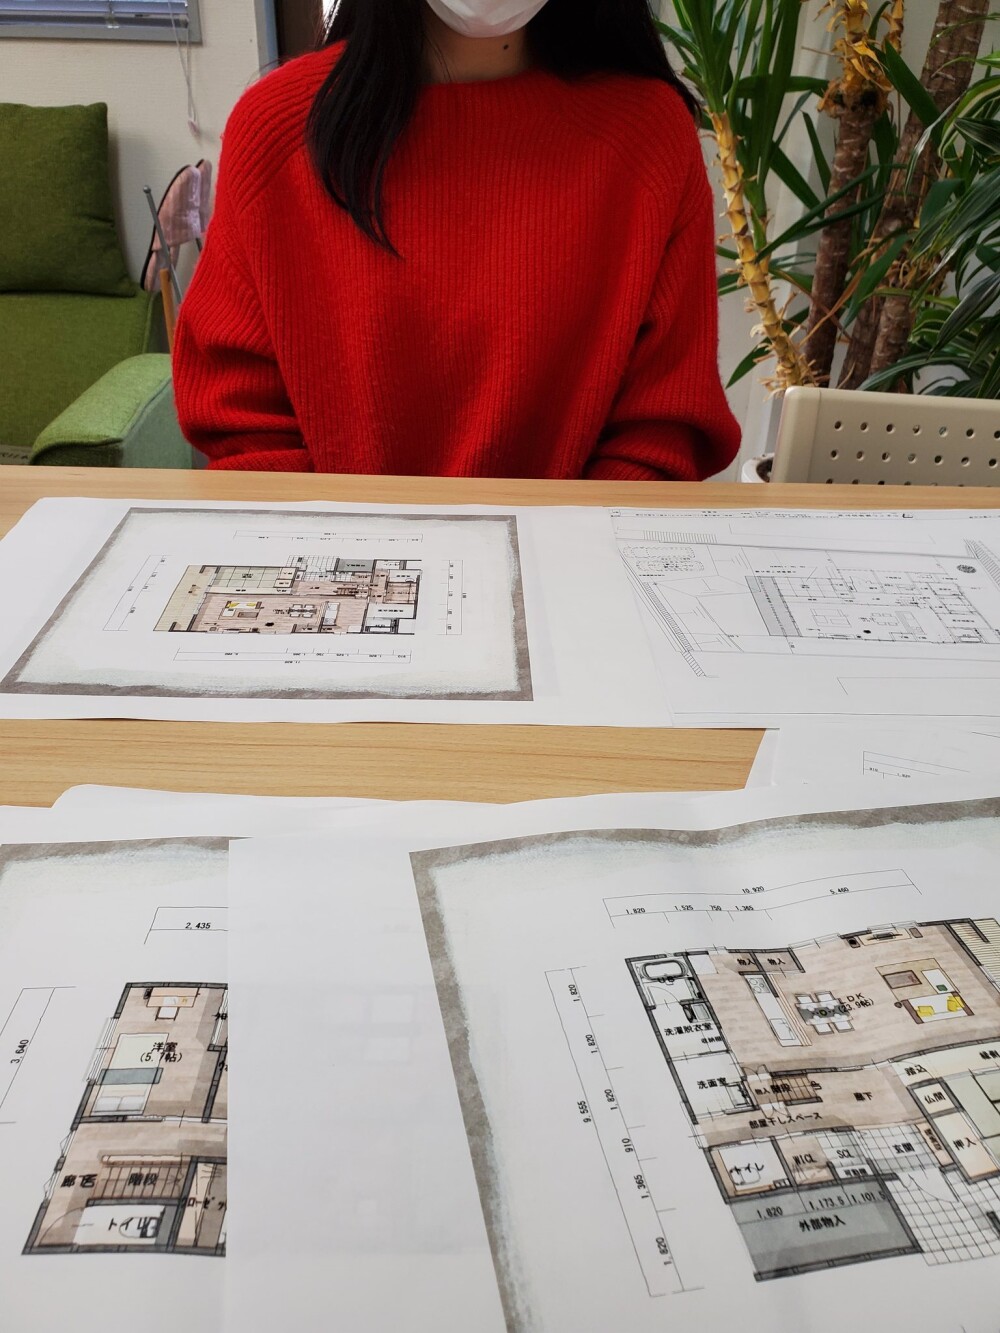 奈良県生駒郡平群町で新築工事計画中の設計デザイン途中、和モダン家、古風なモダン住宅をイメージした住まい手さんにとって暮らしやすい心地よさと家事動線、生活動線を間取りに組み込んだ環境計画の優位性